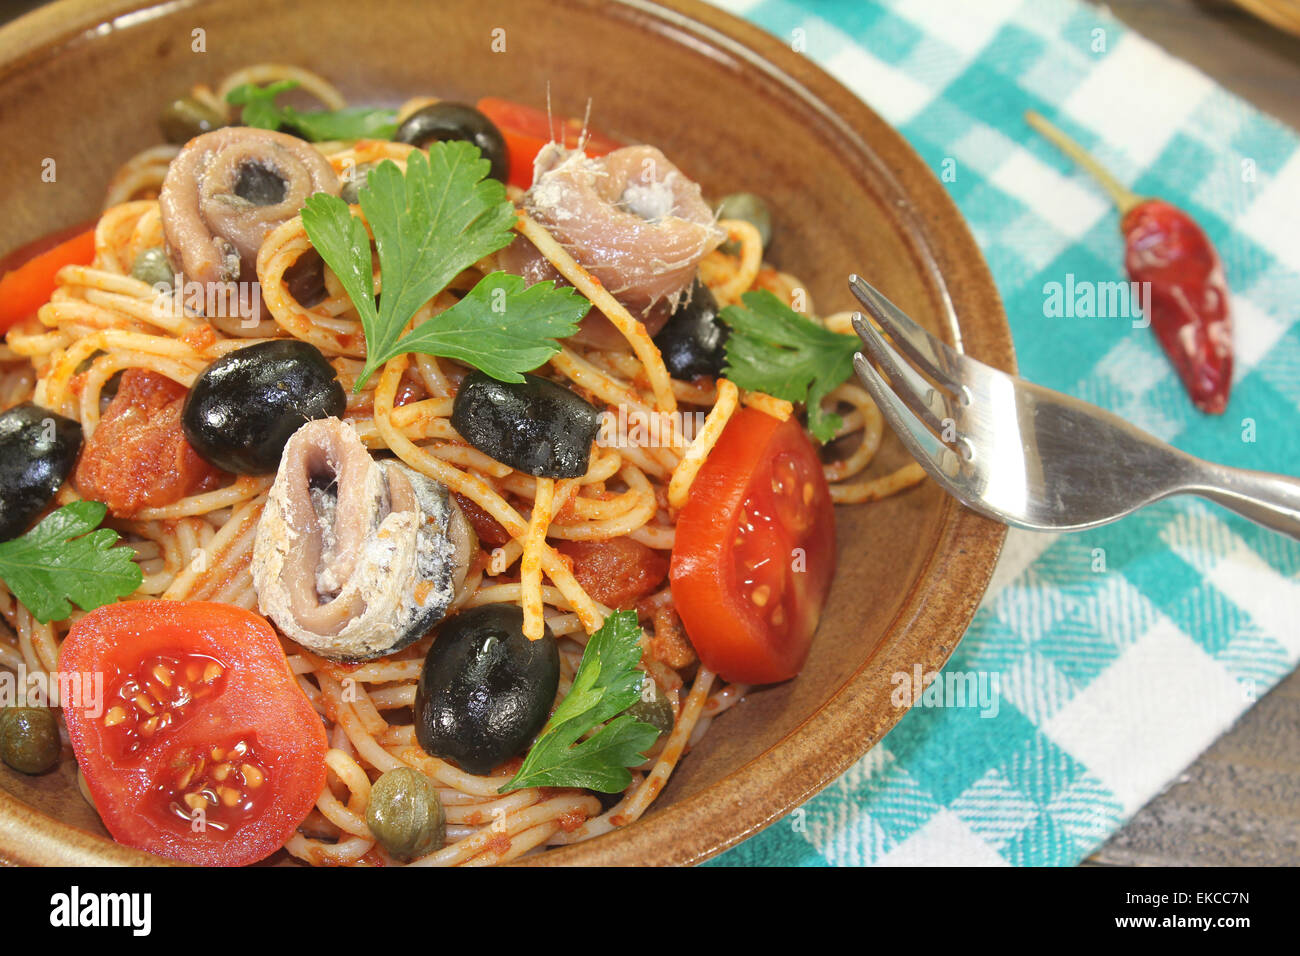 Spaghetti alla puttanesca with capers and anchovies Stock Photo - Alamy